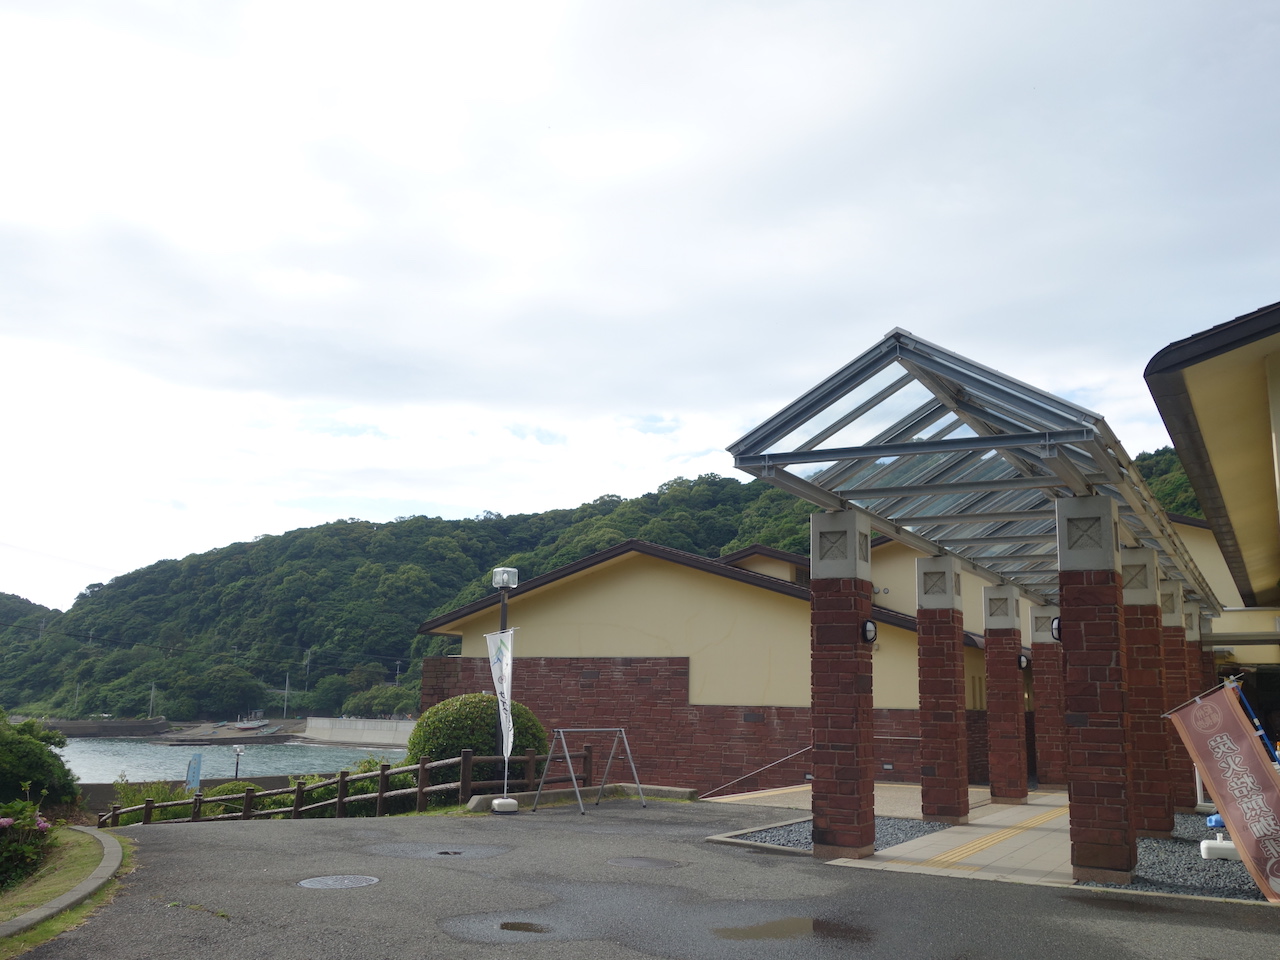 和歌山県の温泉館 海の里「みちしおの湯」がかなり絶景露天風呂だった